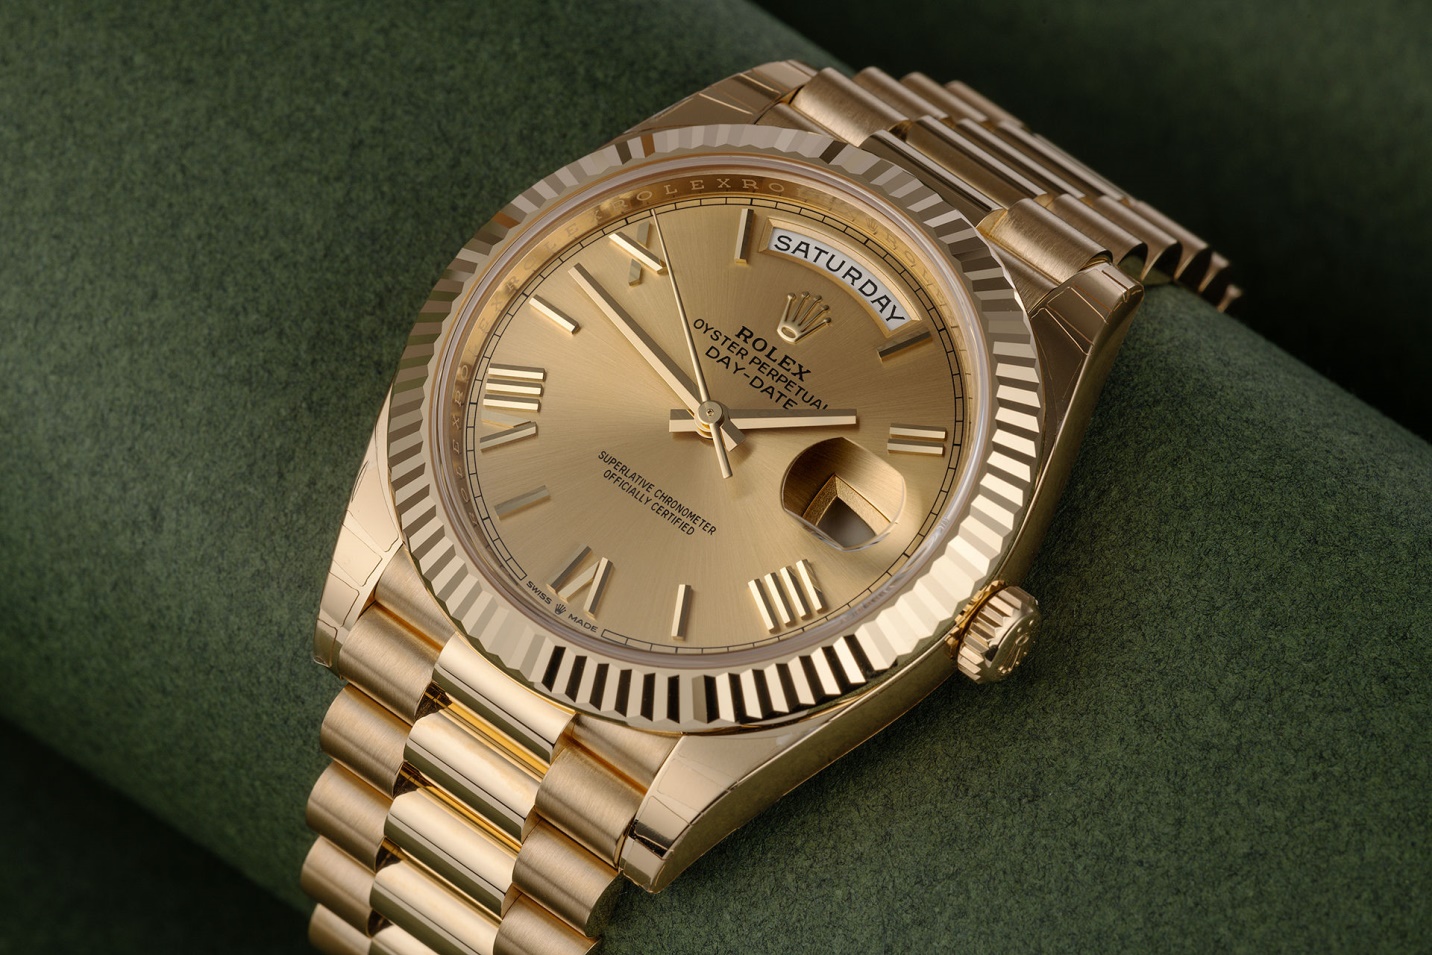 Rolex Days Date 40mm Replica chiếc đồng hồ đắt giá nhất hiện nay